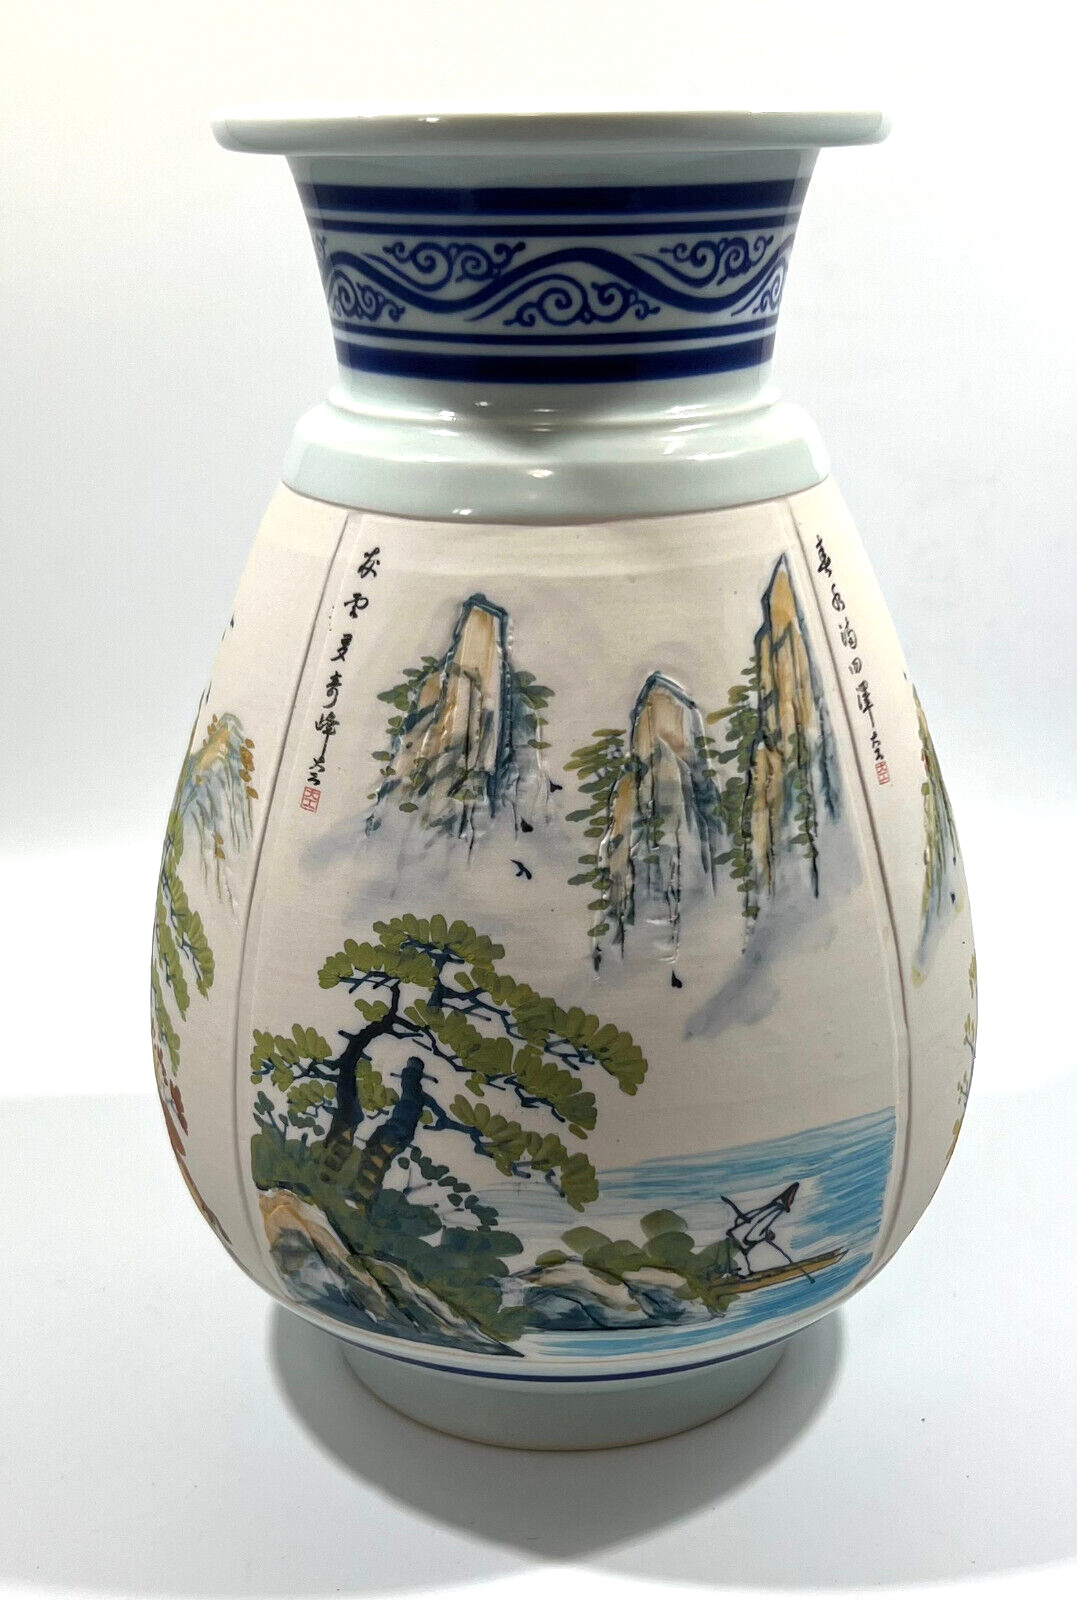 Vintage Japanese Vase Depicting Mt.Fuji Landscapes During The Seasons